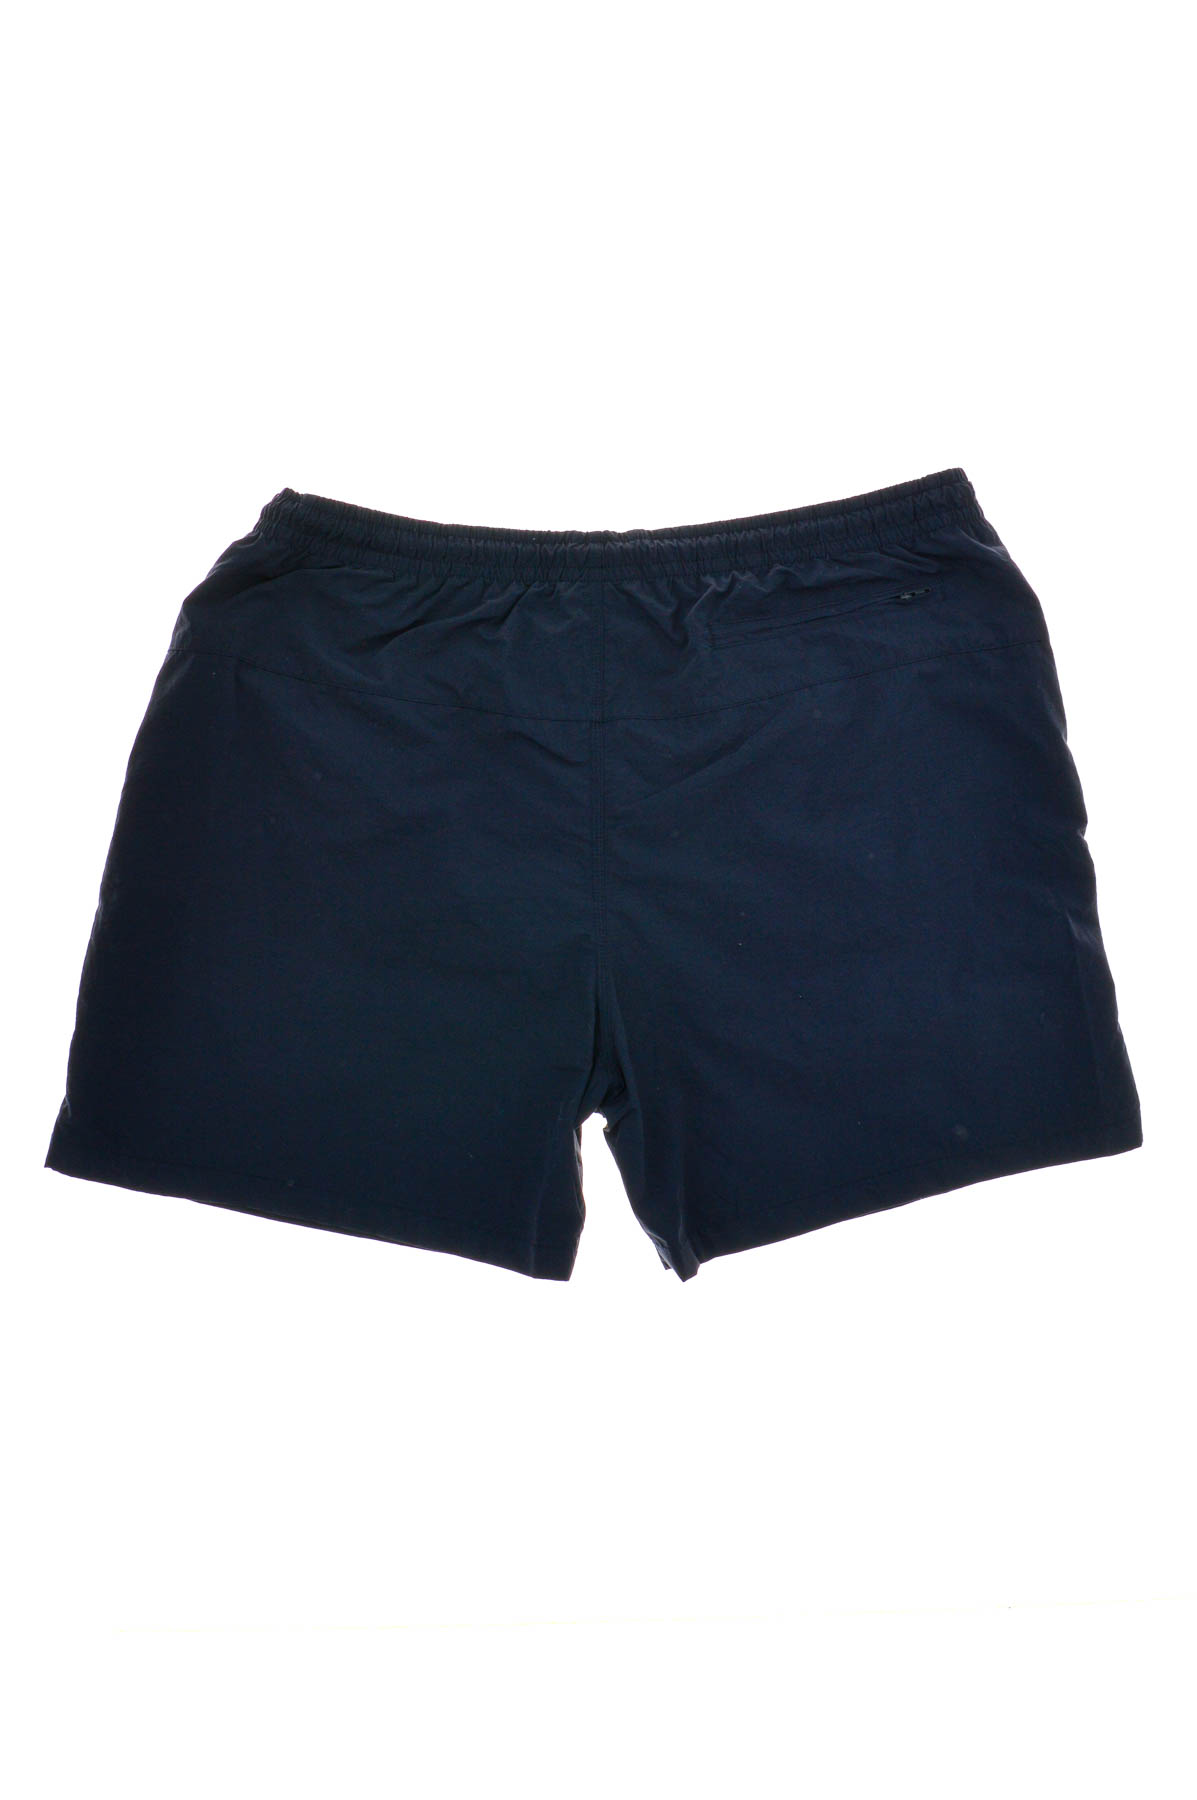 Men's shorts - URBAN CLASSICS - 1